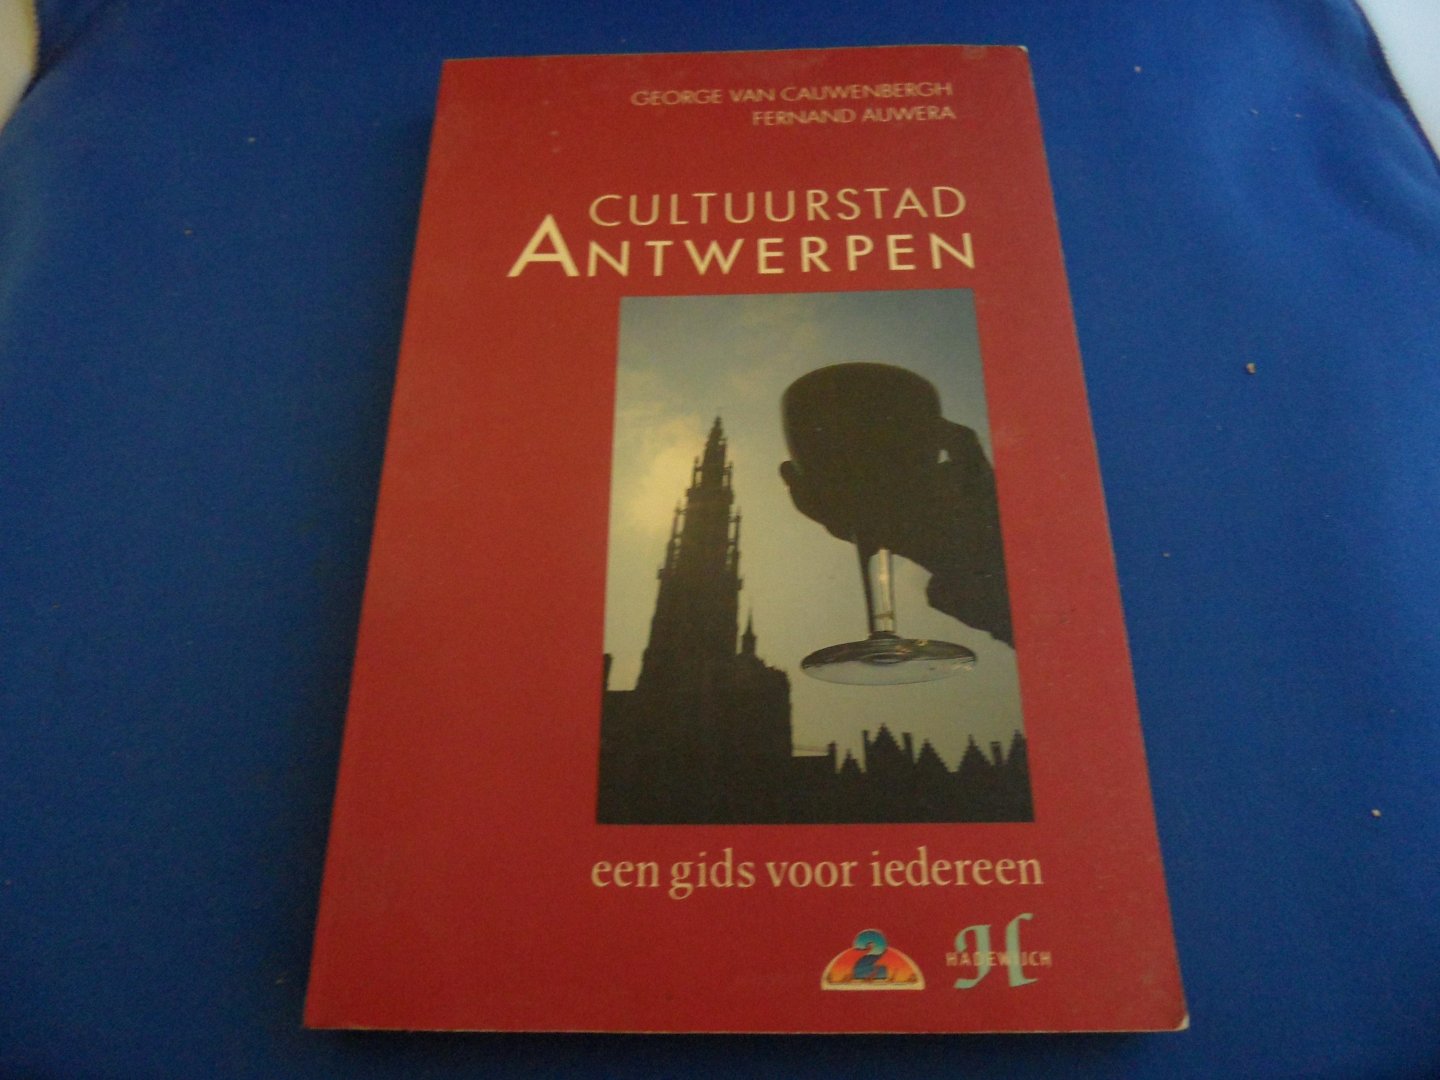 Cauwenberg, Fernand - Cauwenbergh, George van - Cultuurstad Antwerpen. Een gids voor iedereen